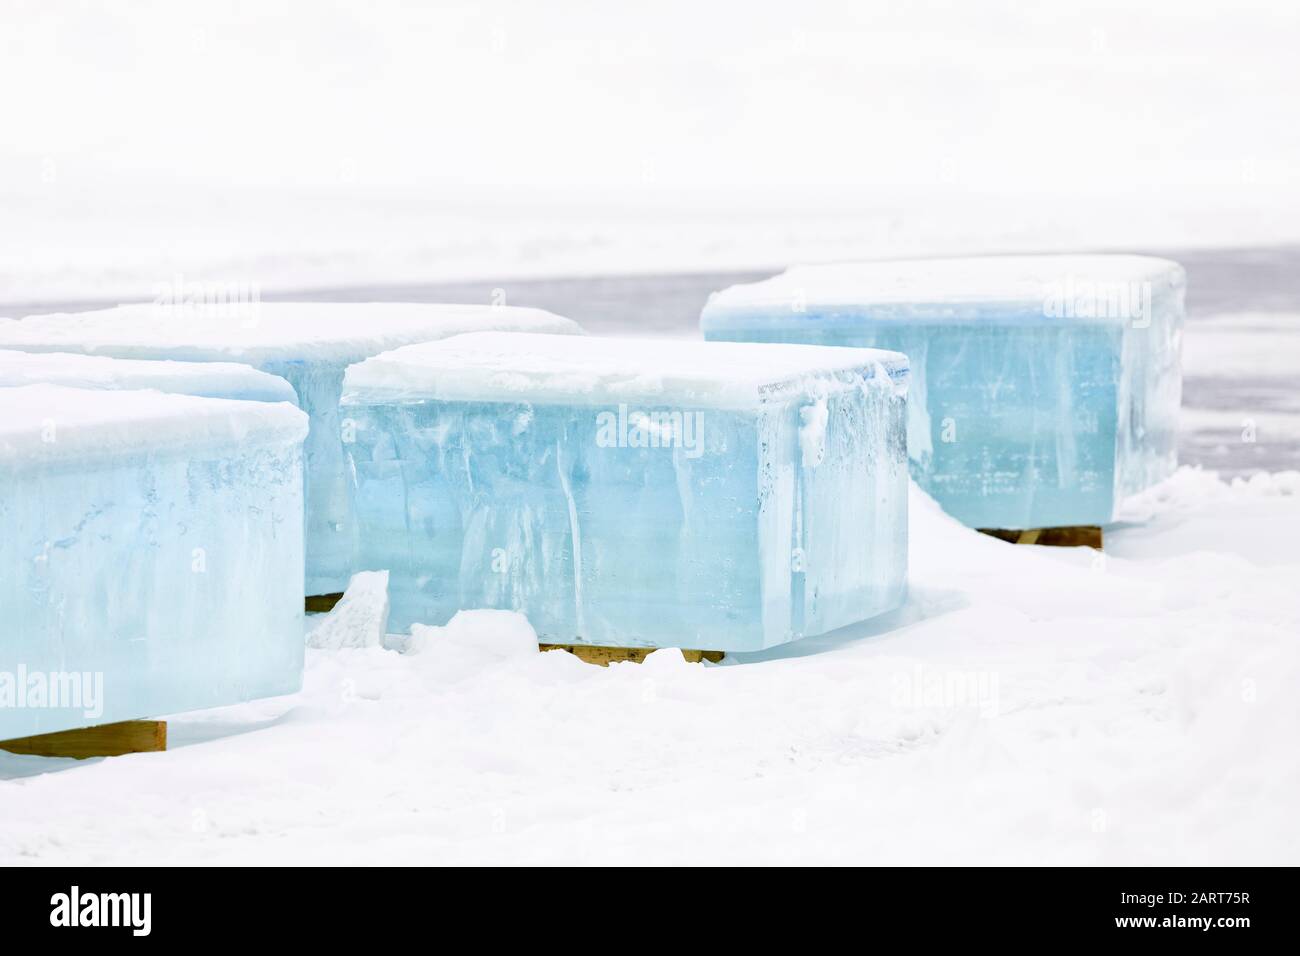 Récolte de blocs de glace d'eau douce, Manitoba, Canada. Banque D'Images